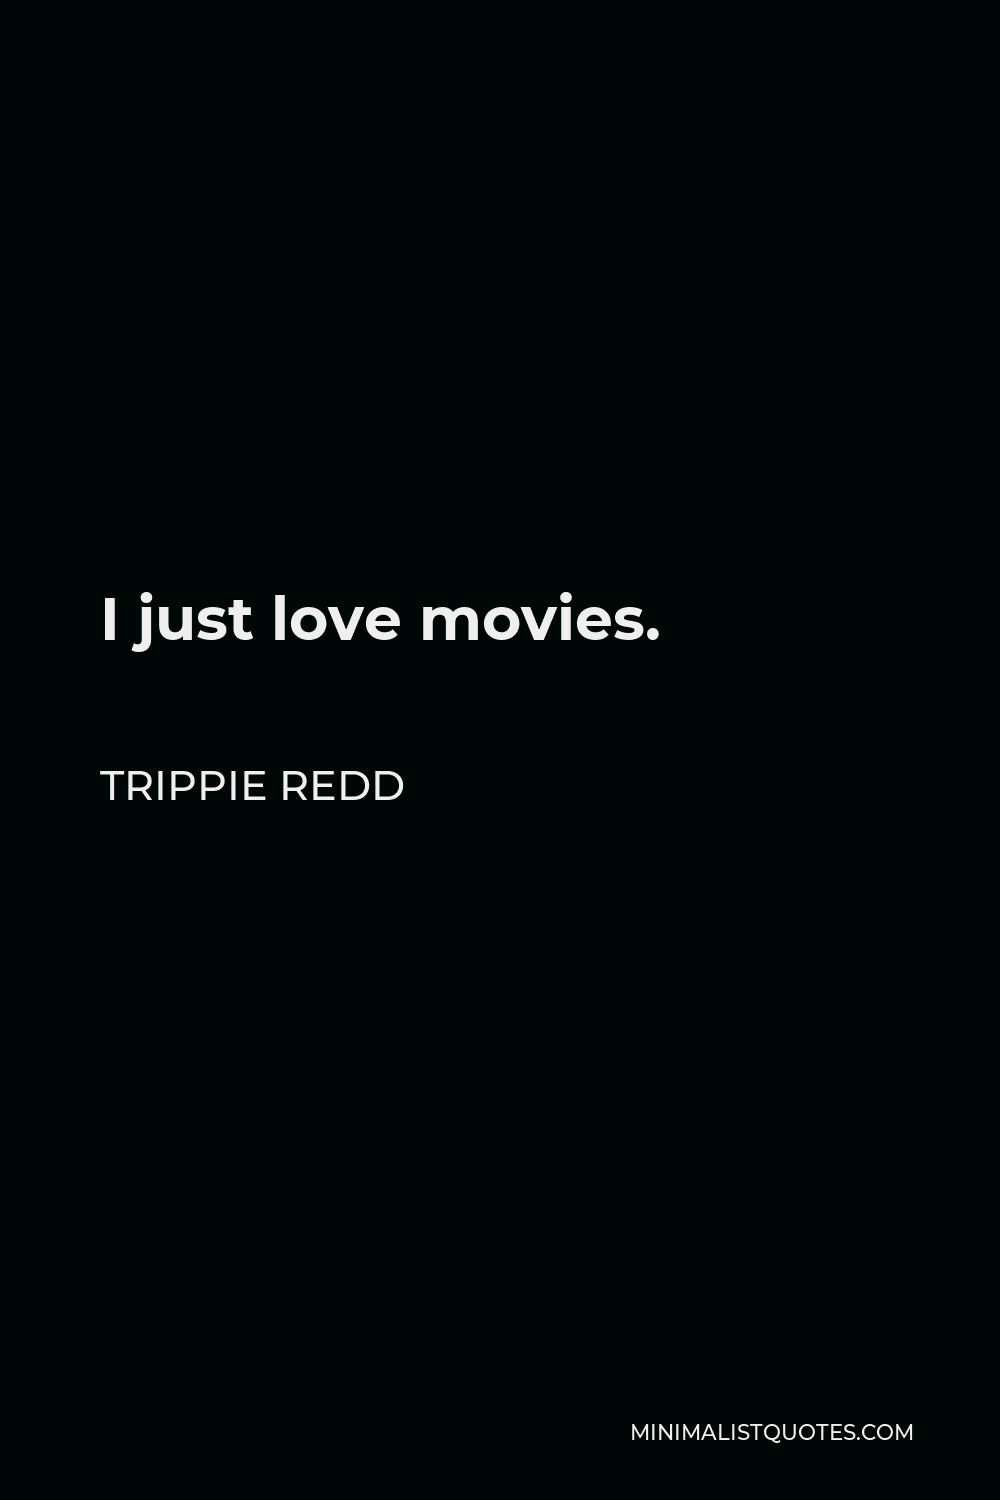 Trippie Redd Quote - I just love movies.